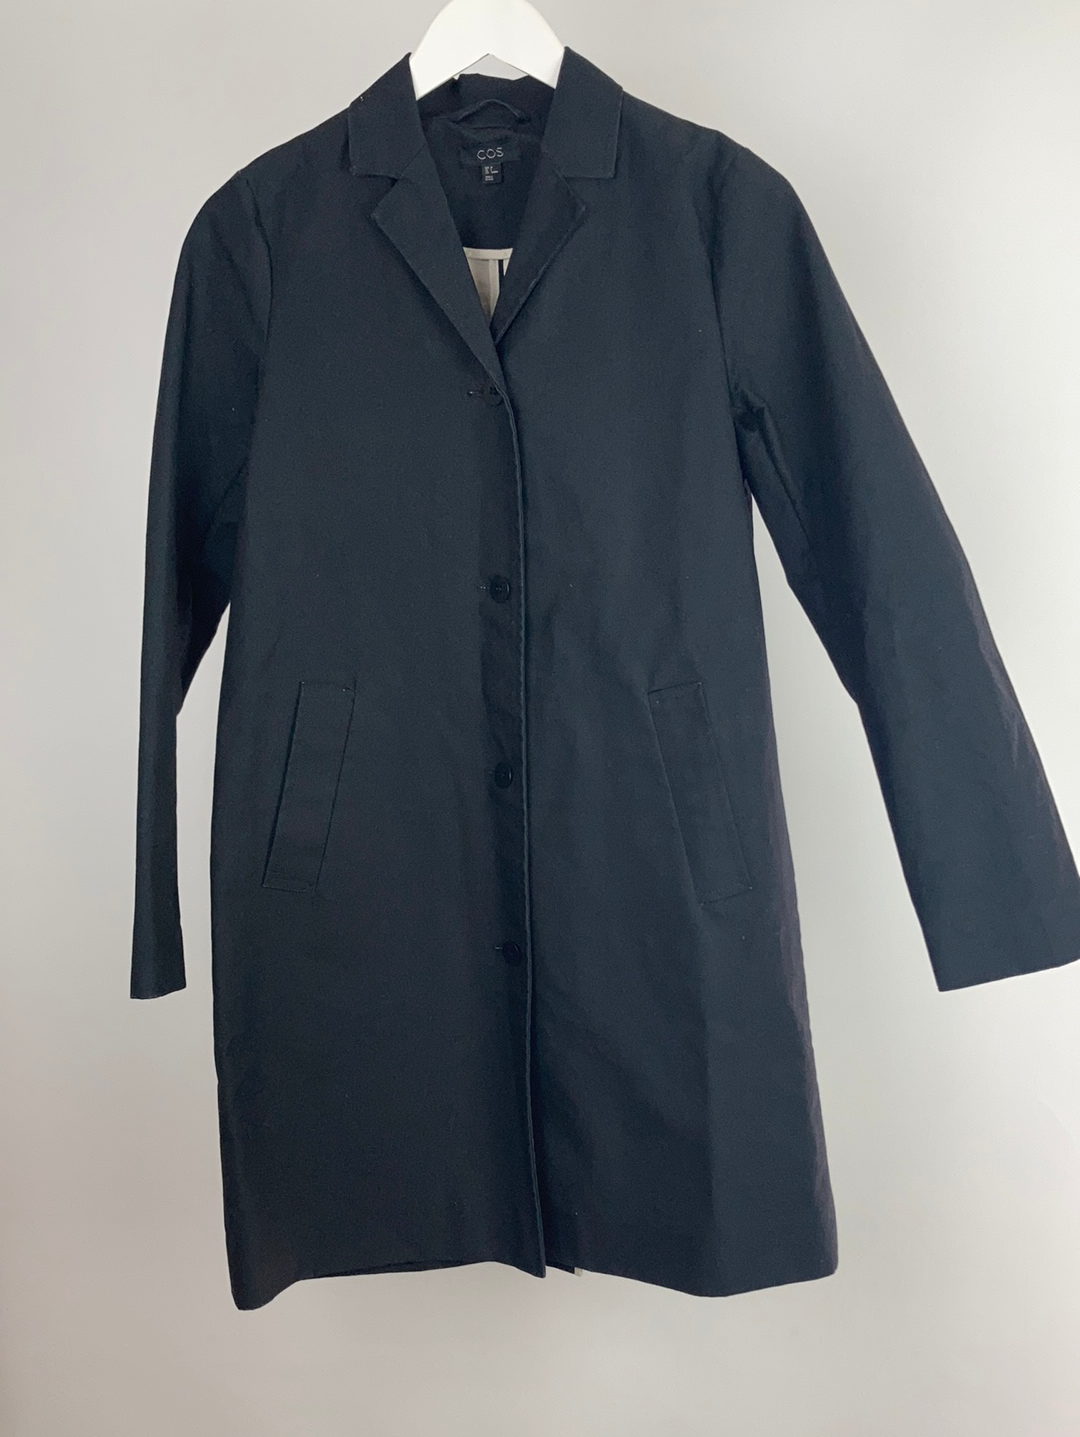 Cos cotton coated waterproof coat size eur 34(uk8)